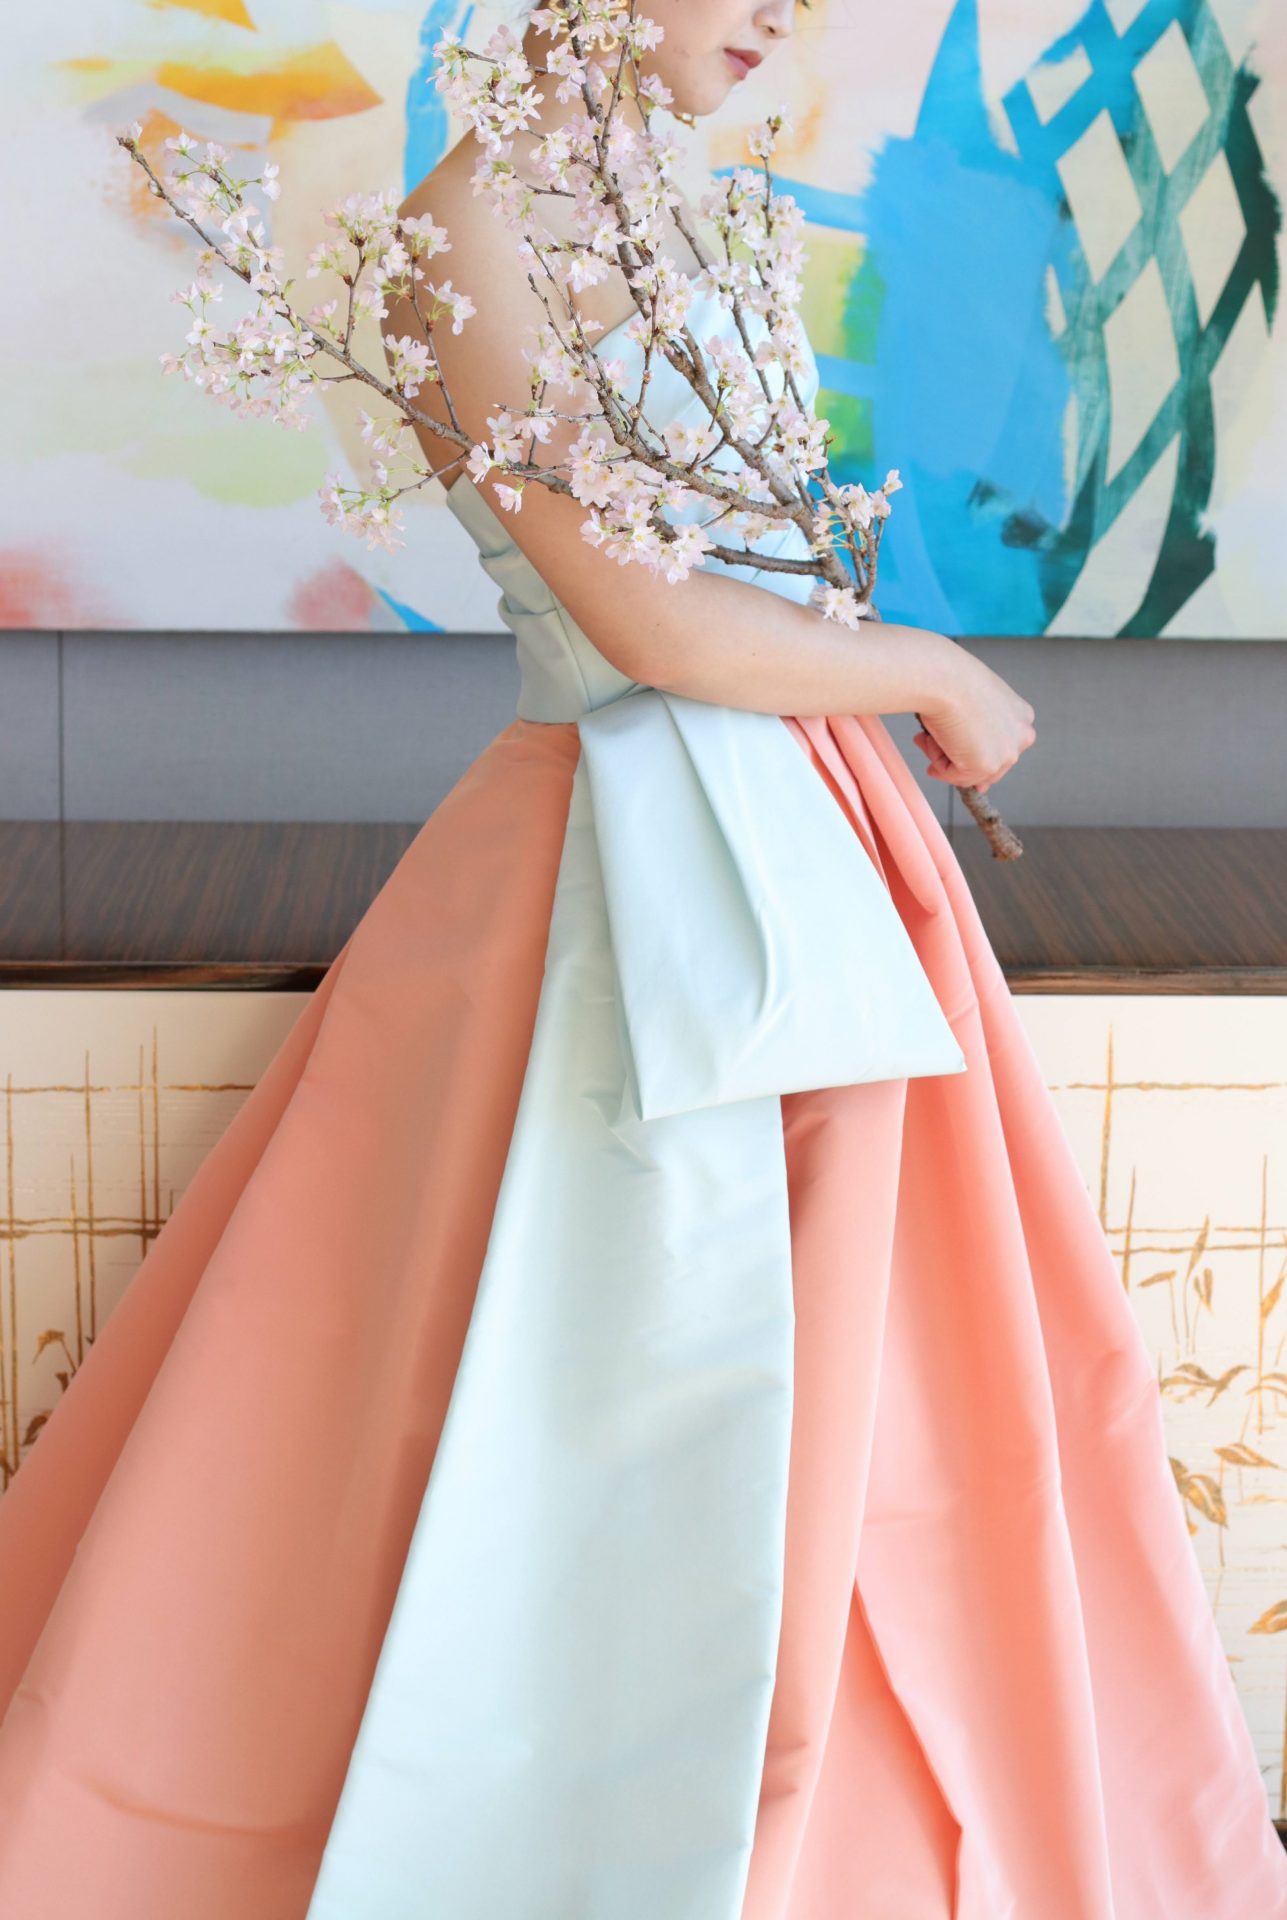 モニークルイリエの新作、ピンクとブルーのパステルカラーのドレスは甘い印象になりがちなため、桜の枝ブーケを合わせることでモダンで気品溢れる雰囲気を演出いたします